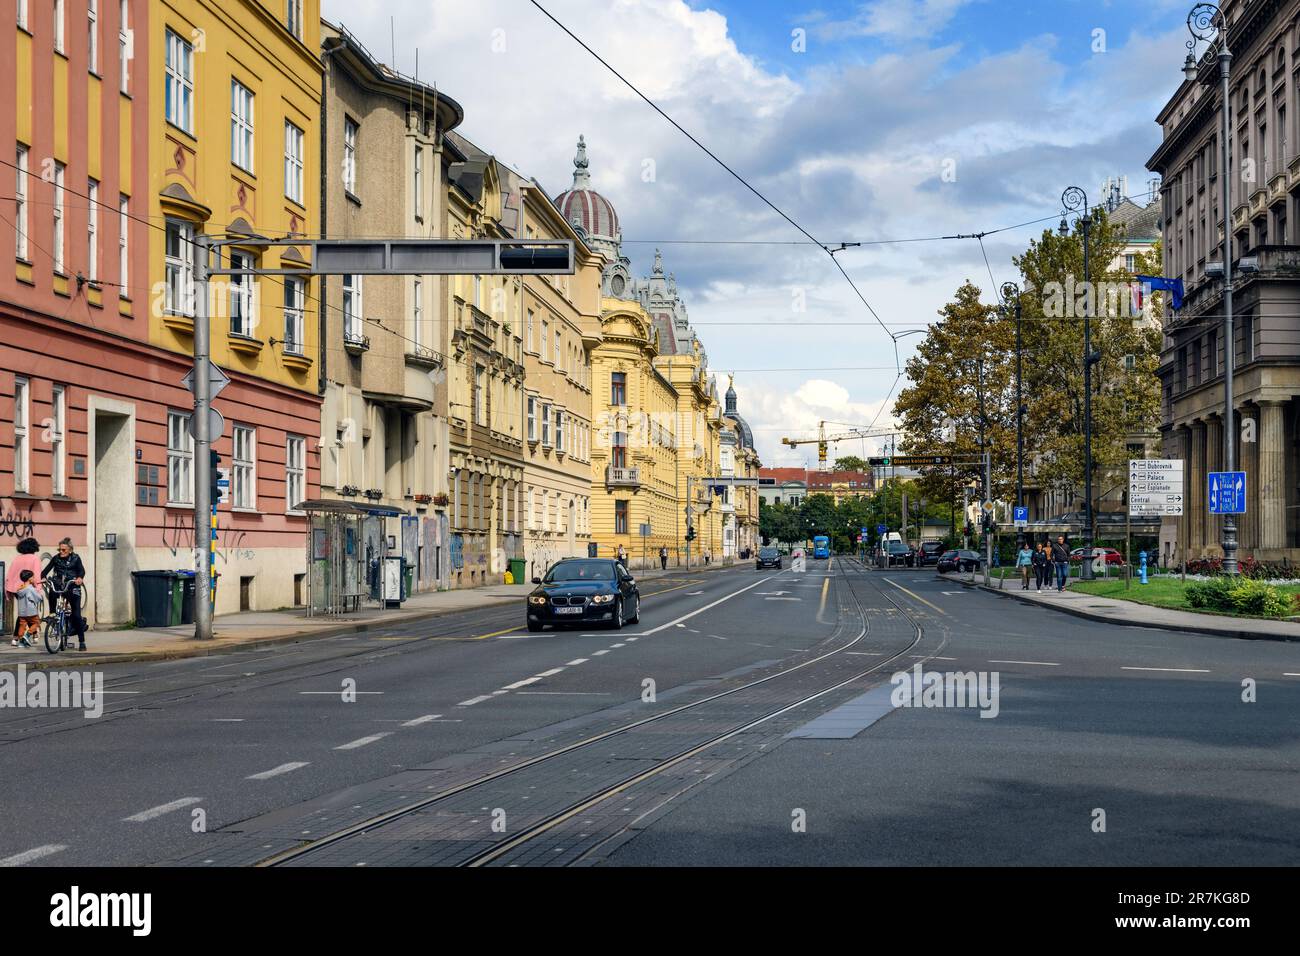 Un magnifique paysage urbain avec de nombreux grands bâtiments et voitures dans la rue de Zagreb, en Croatie Banque D'Images